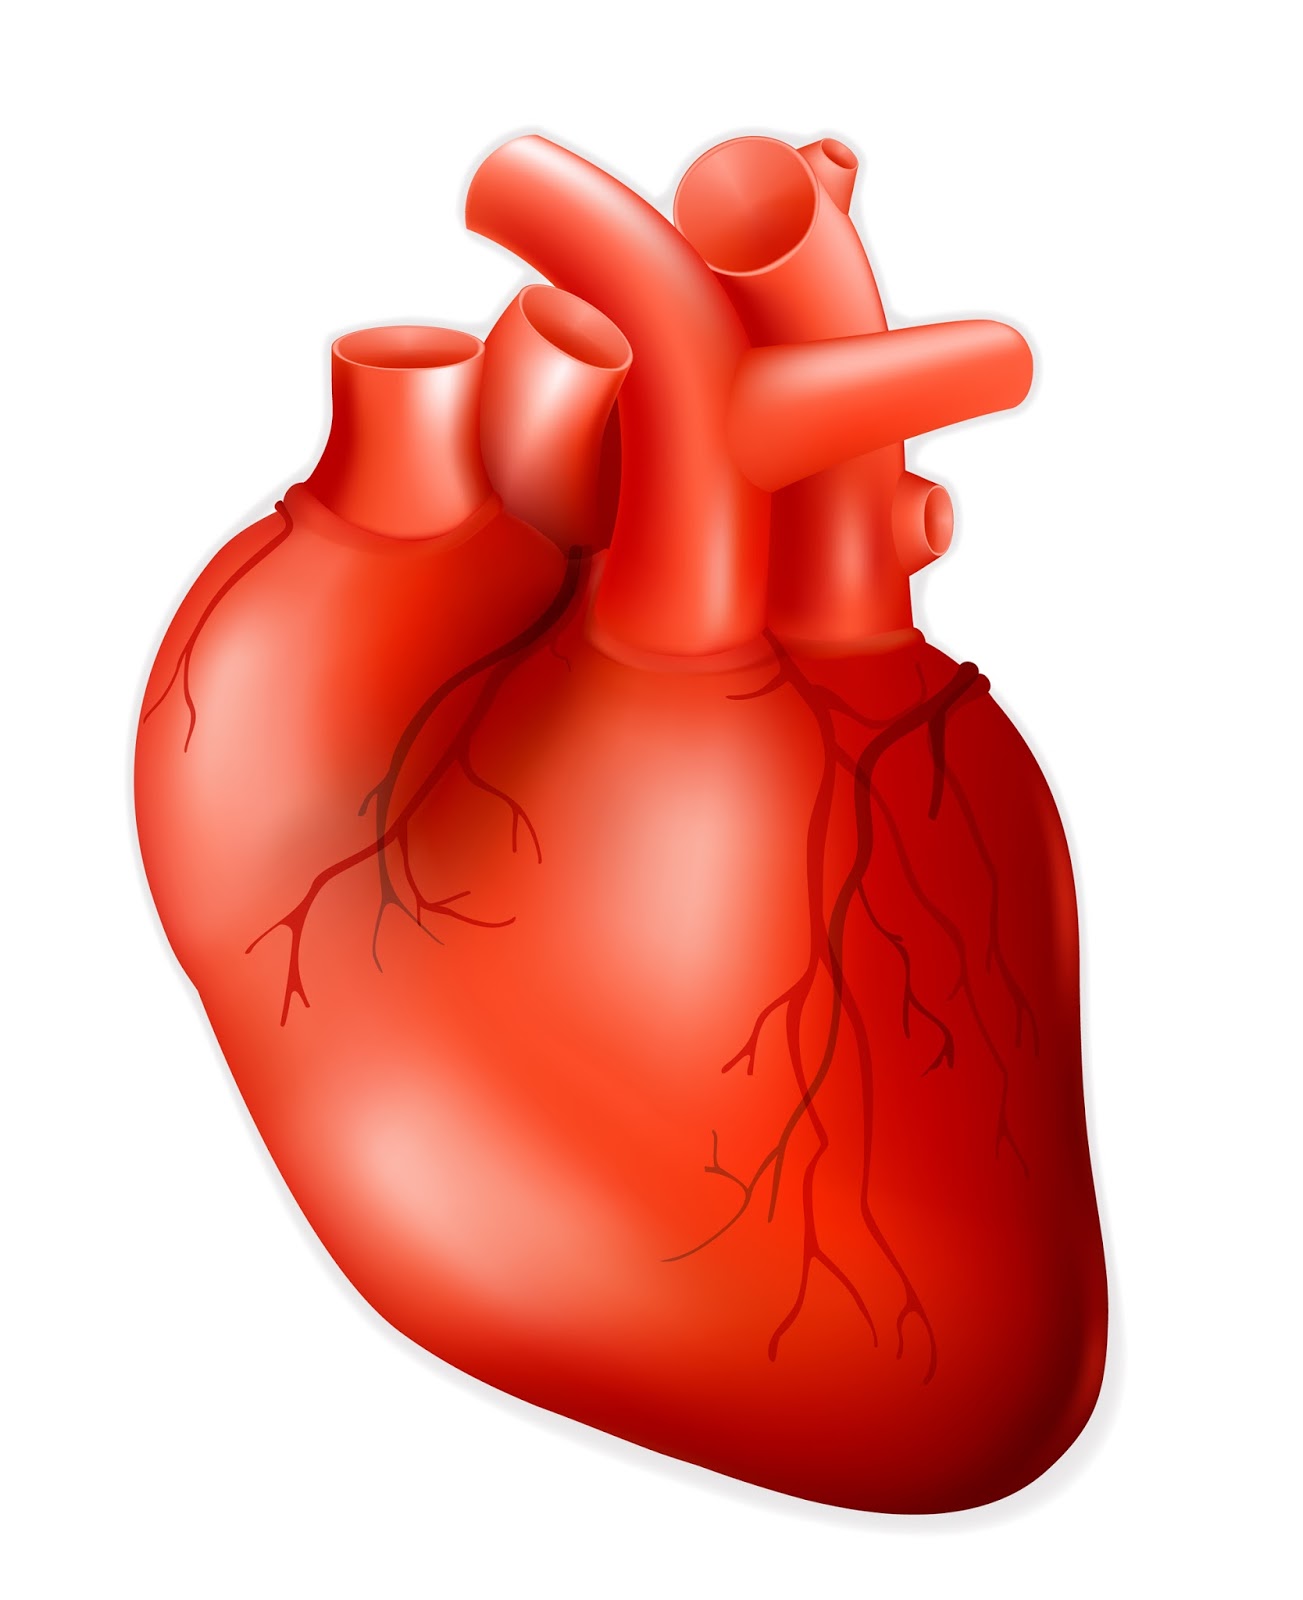 Human Heart Heart Pacemaker